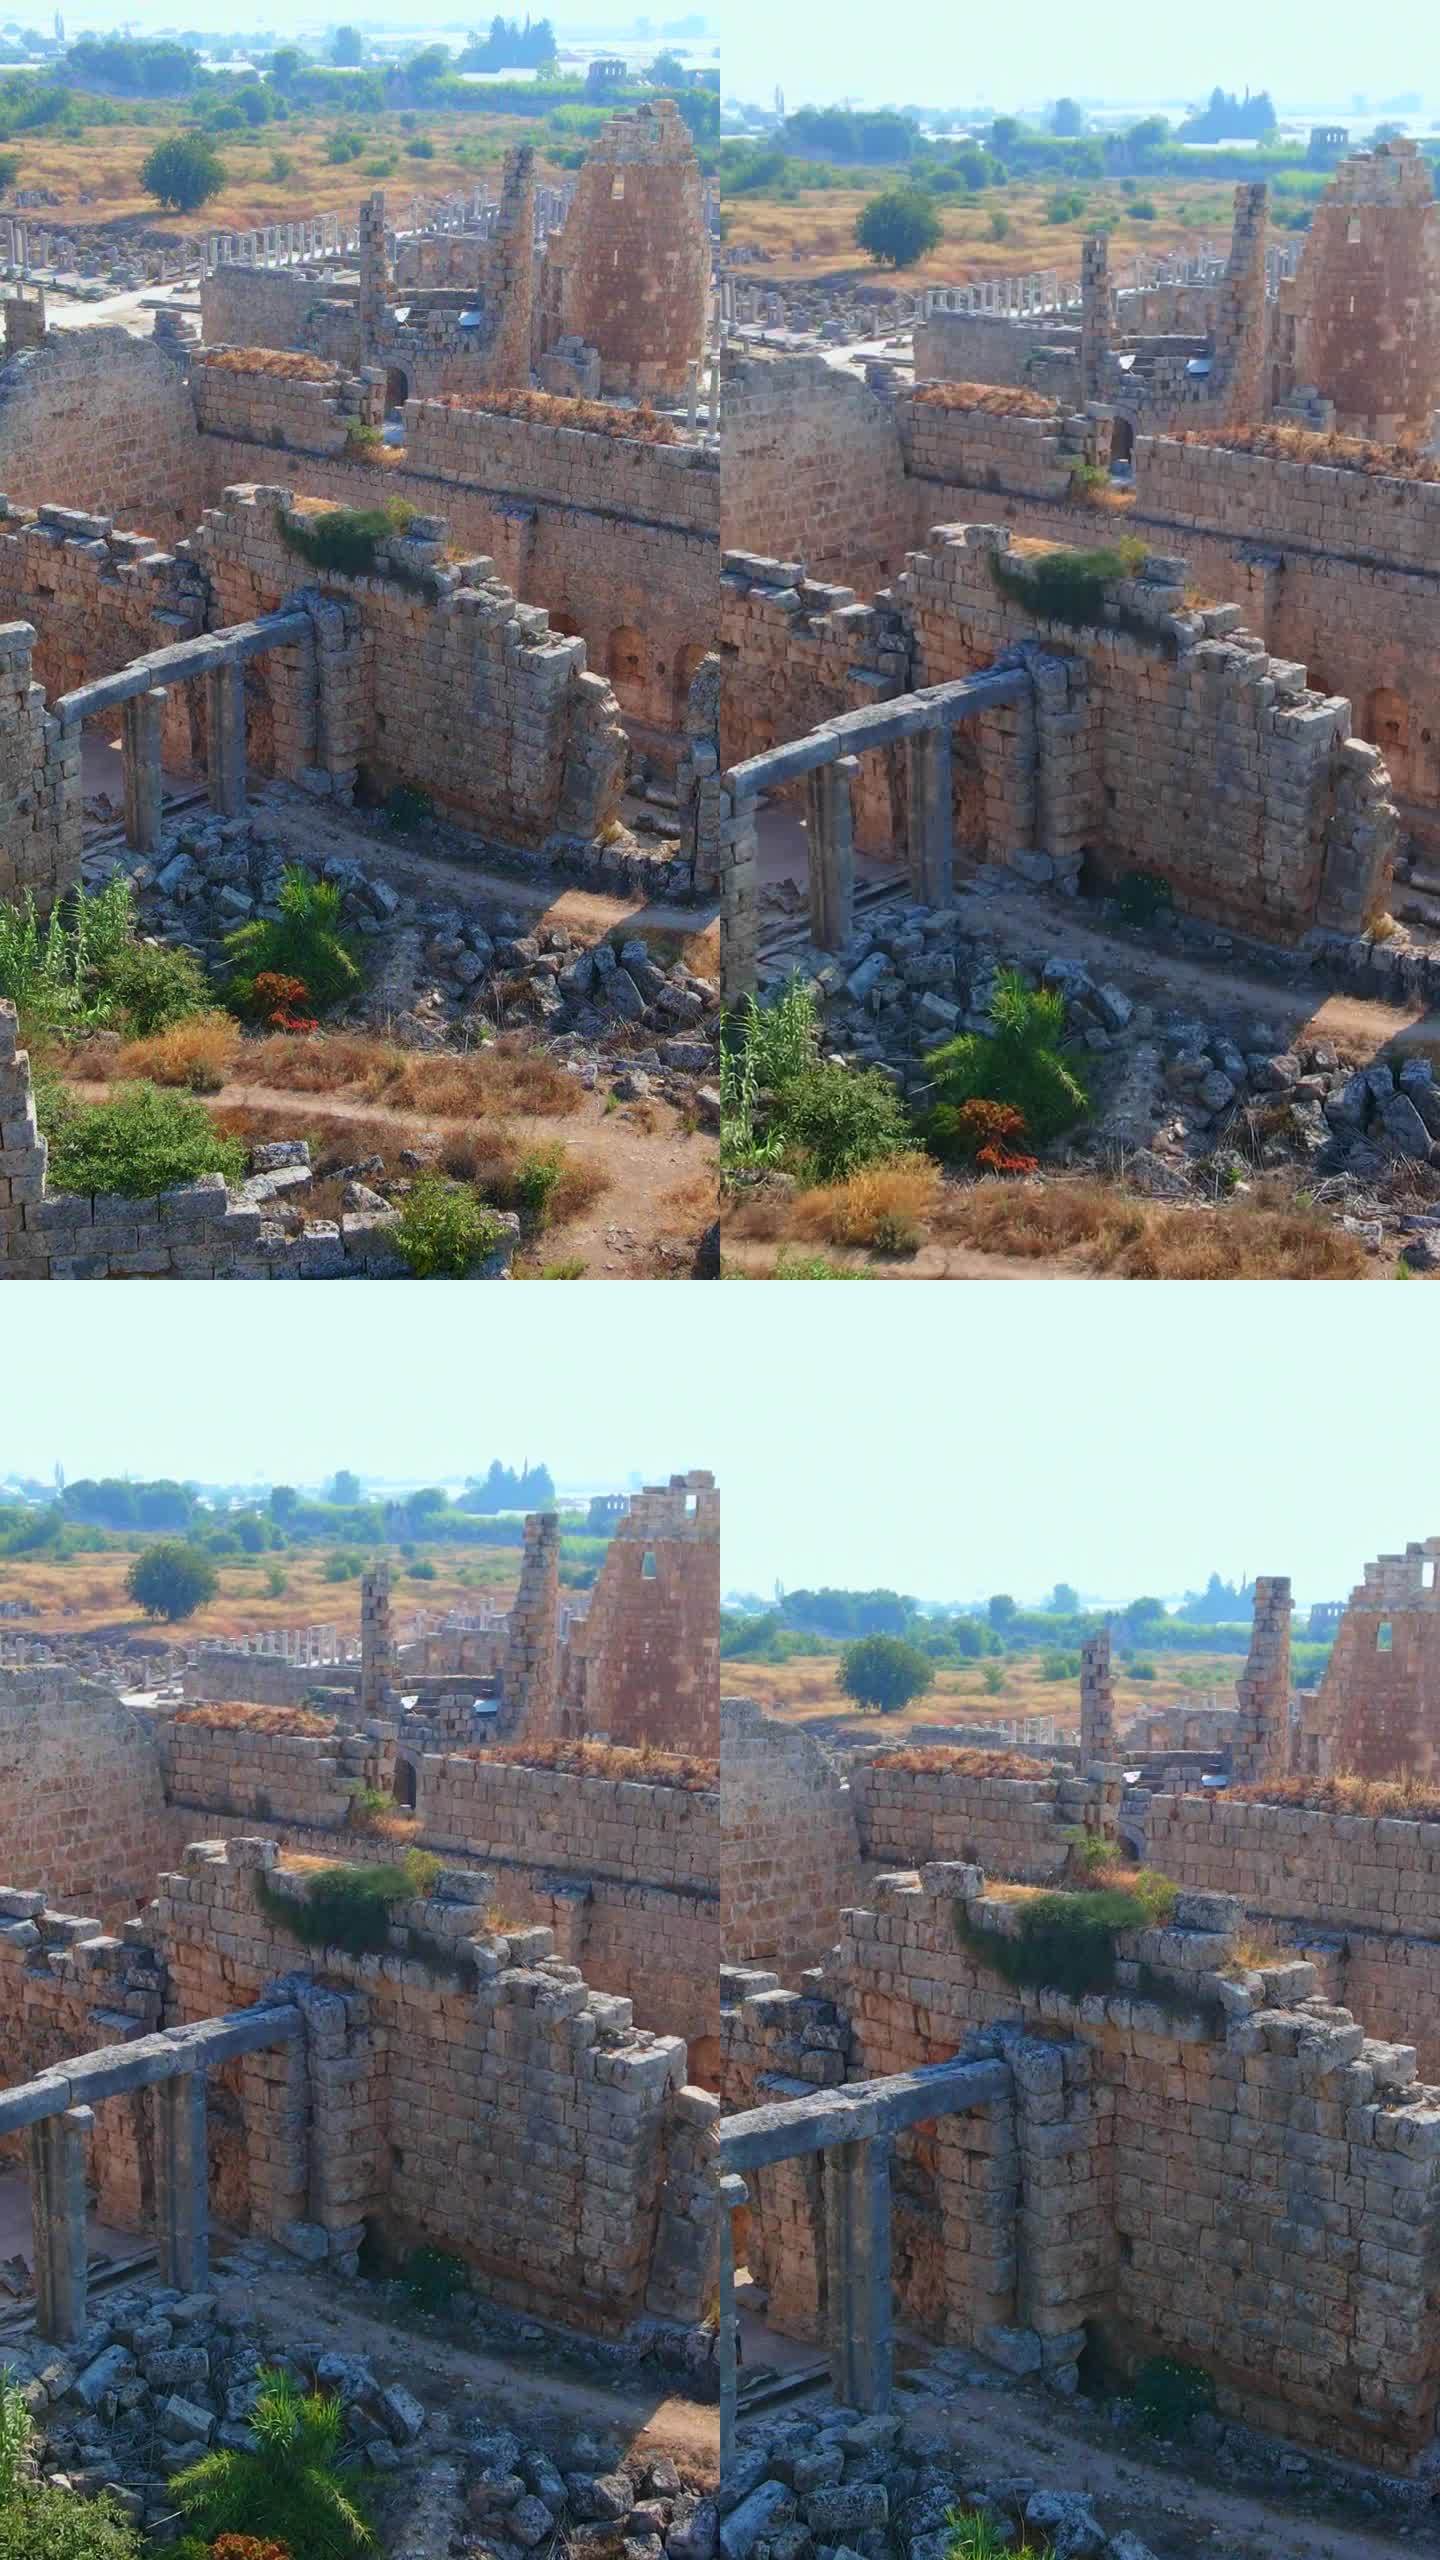 垂直视频。故事的格式。在这个迷人的空中库存视频中，展示了土耳其安塔利亚当代城市佩尔热古城的非凡废墟。